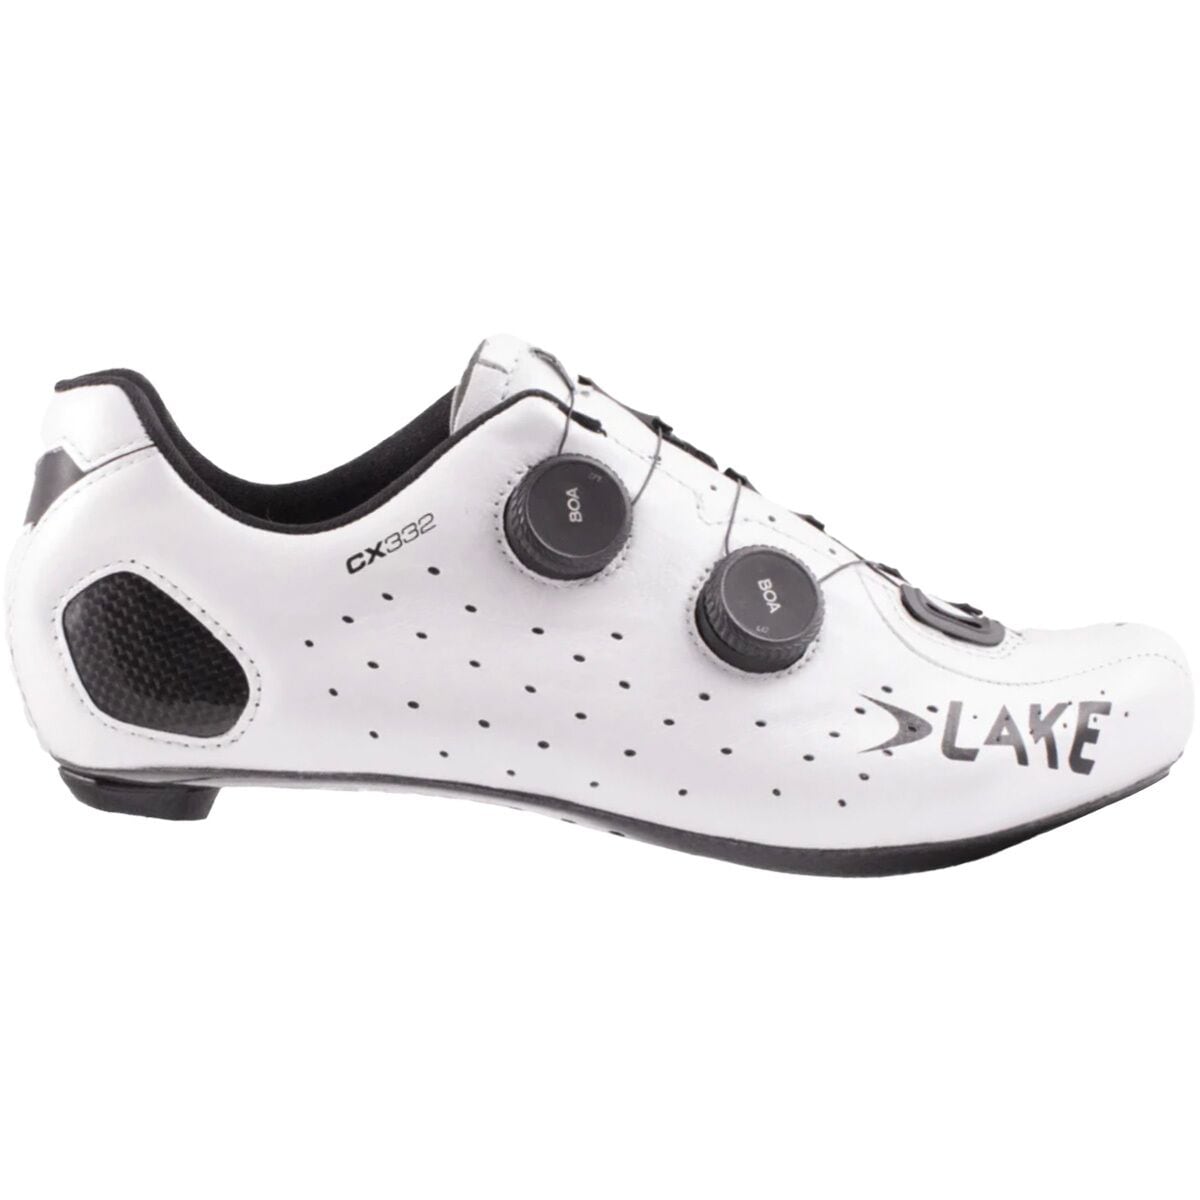 Lake CX332 Cycling Shoe Mens